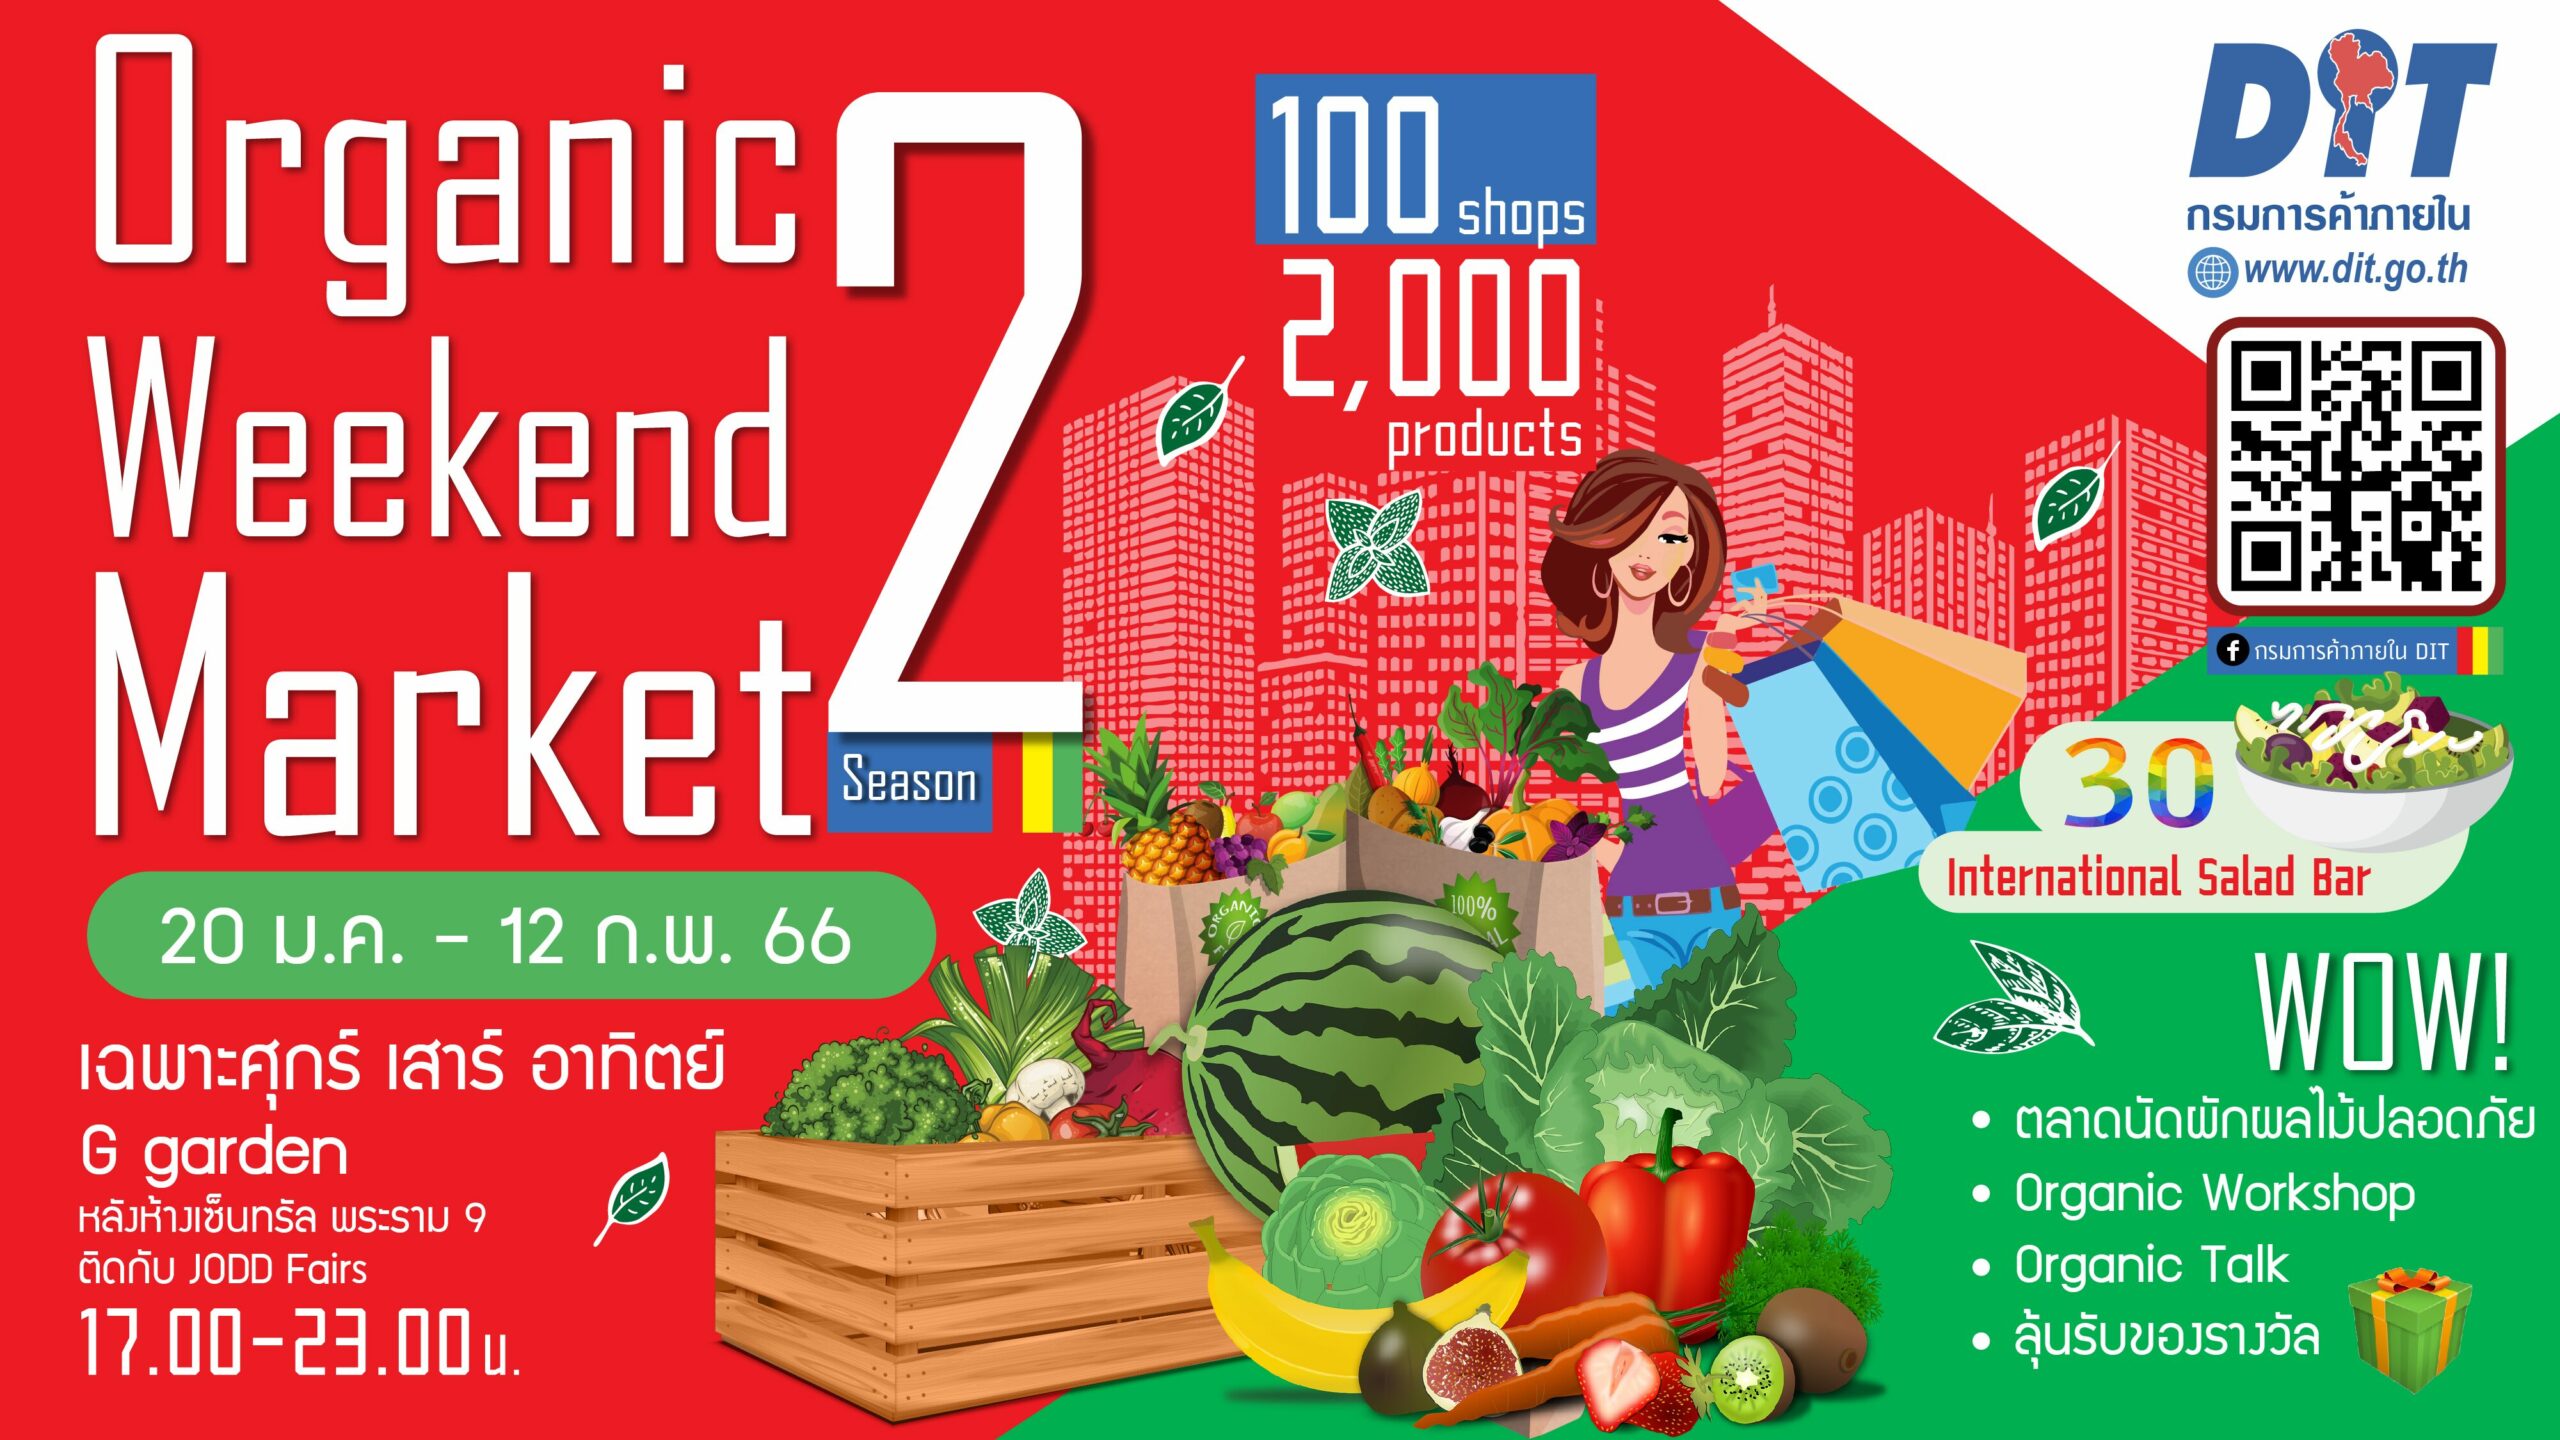 ตลาดนัดอินทรีย์ใจกลางเมือง Organic Weekend Market Season 2